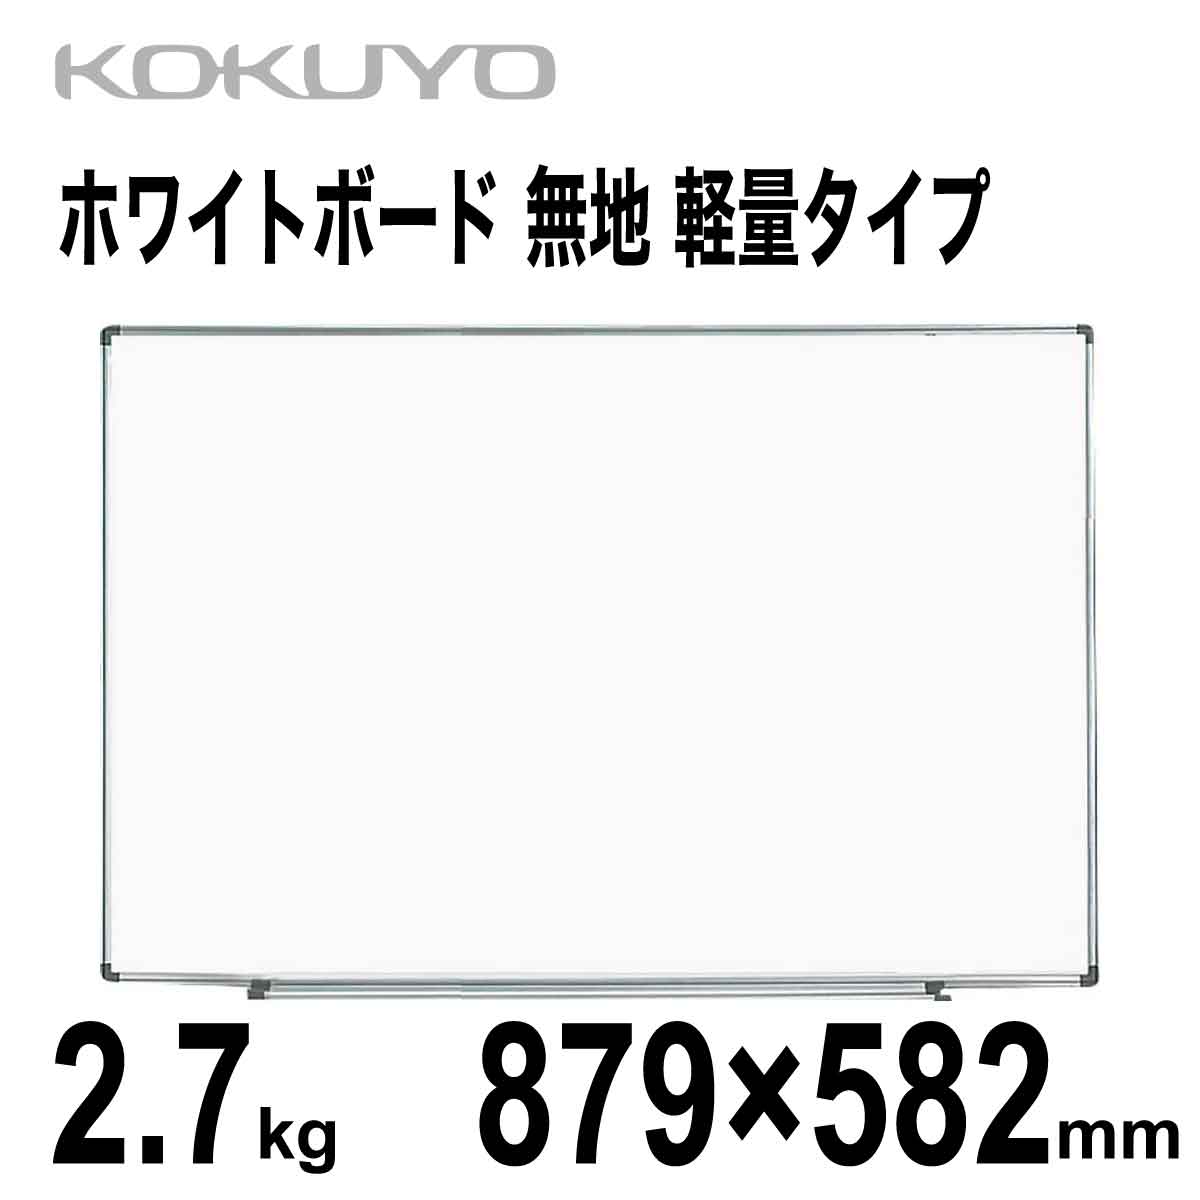 【楽天市場】[コクヨ] ホワイトボード 無地 582×433mm 1.4kg 軽量